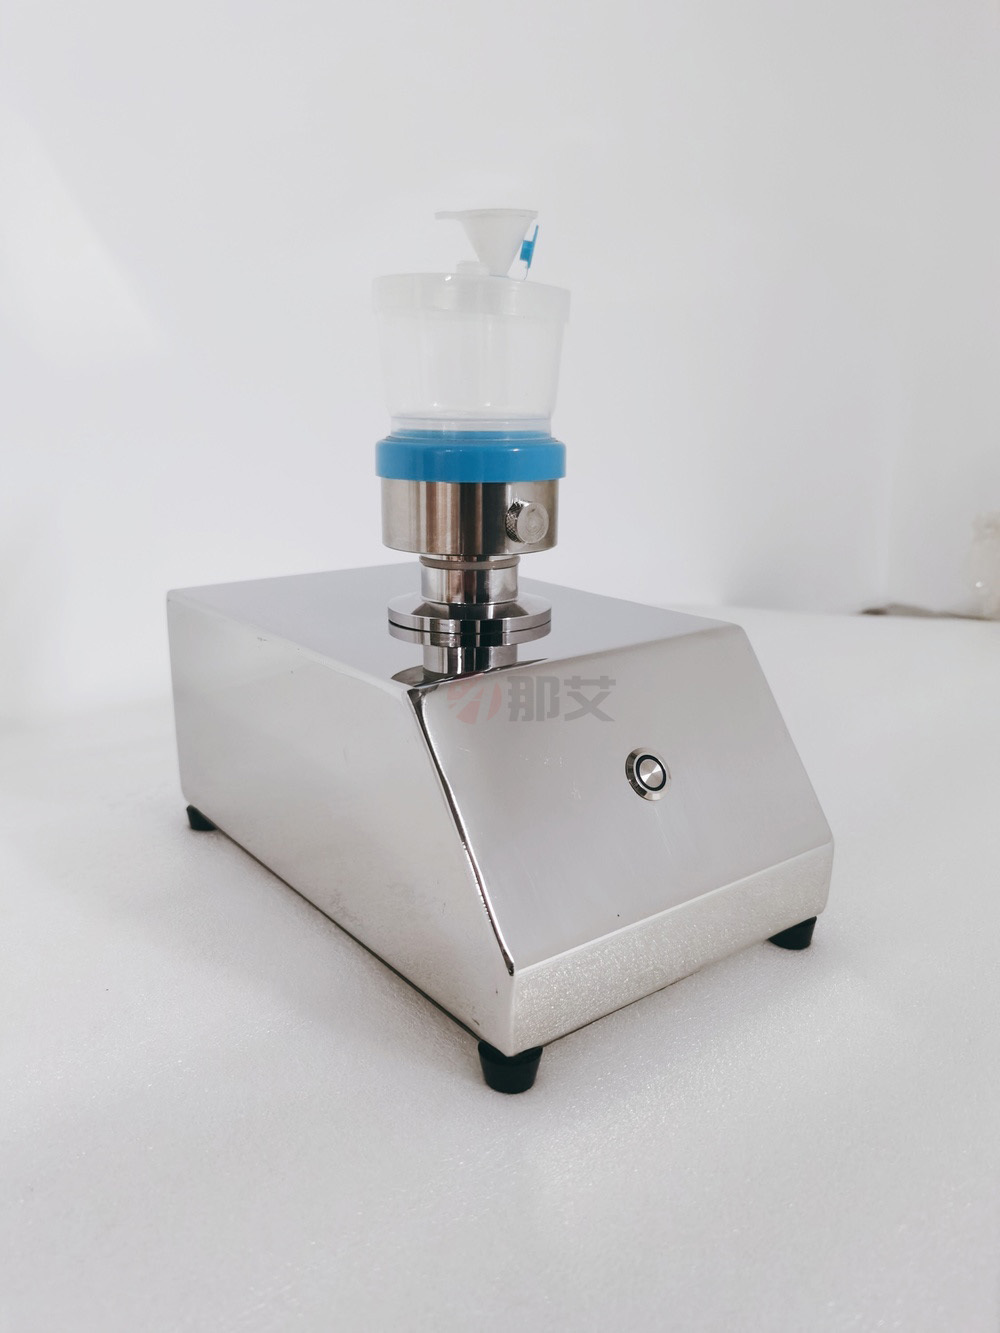 内窥镜微生物限度检查仪,依据标准WS507-2016《软式内镜清洗消毒技术规范》